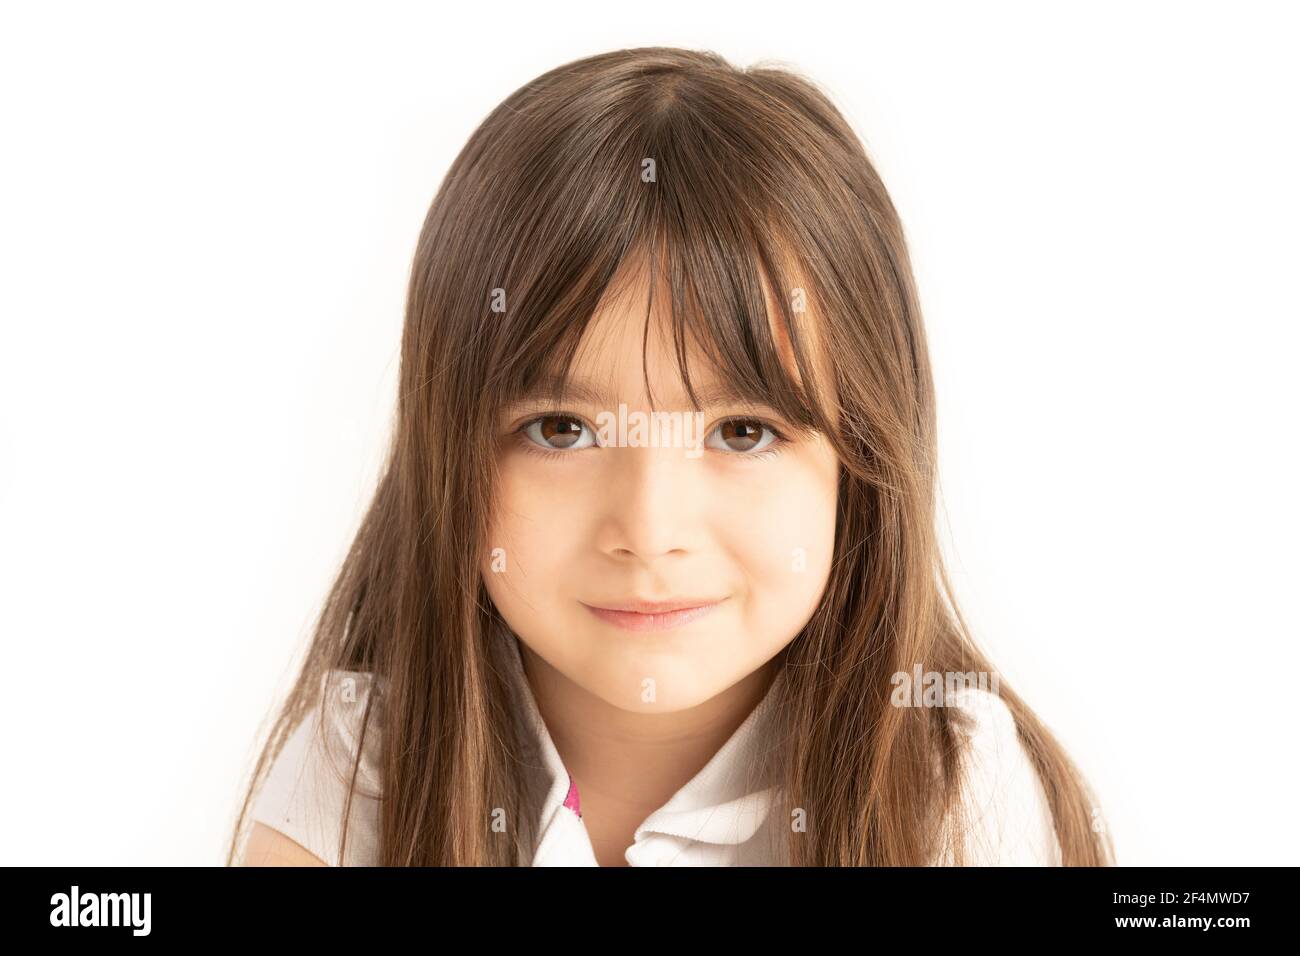 Kleines Mädchen von fünf Jahren schaut direkt in die Augen auf weißem Hintergrund Stockfoto